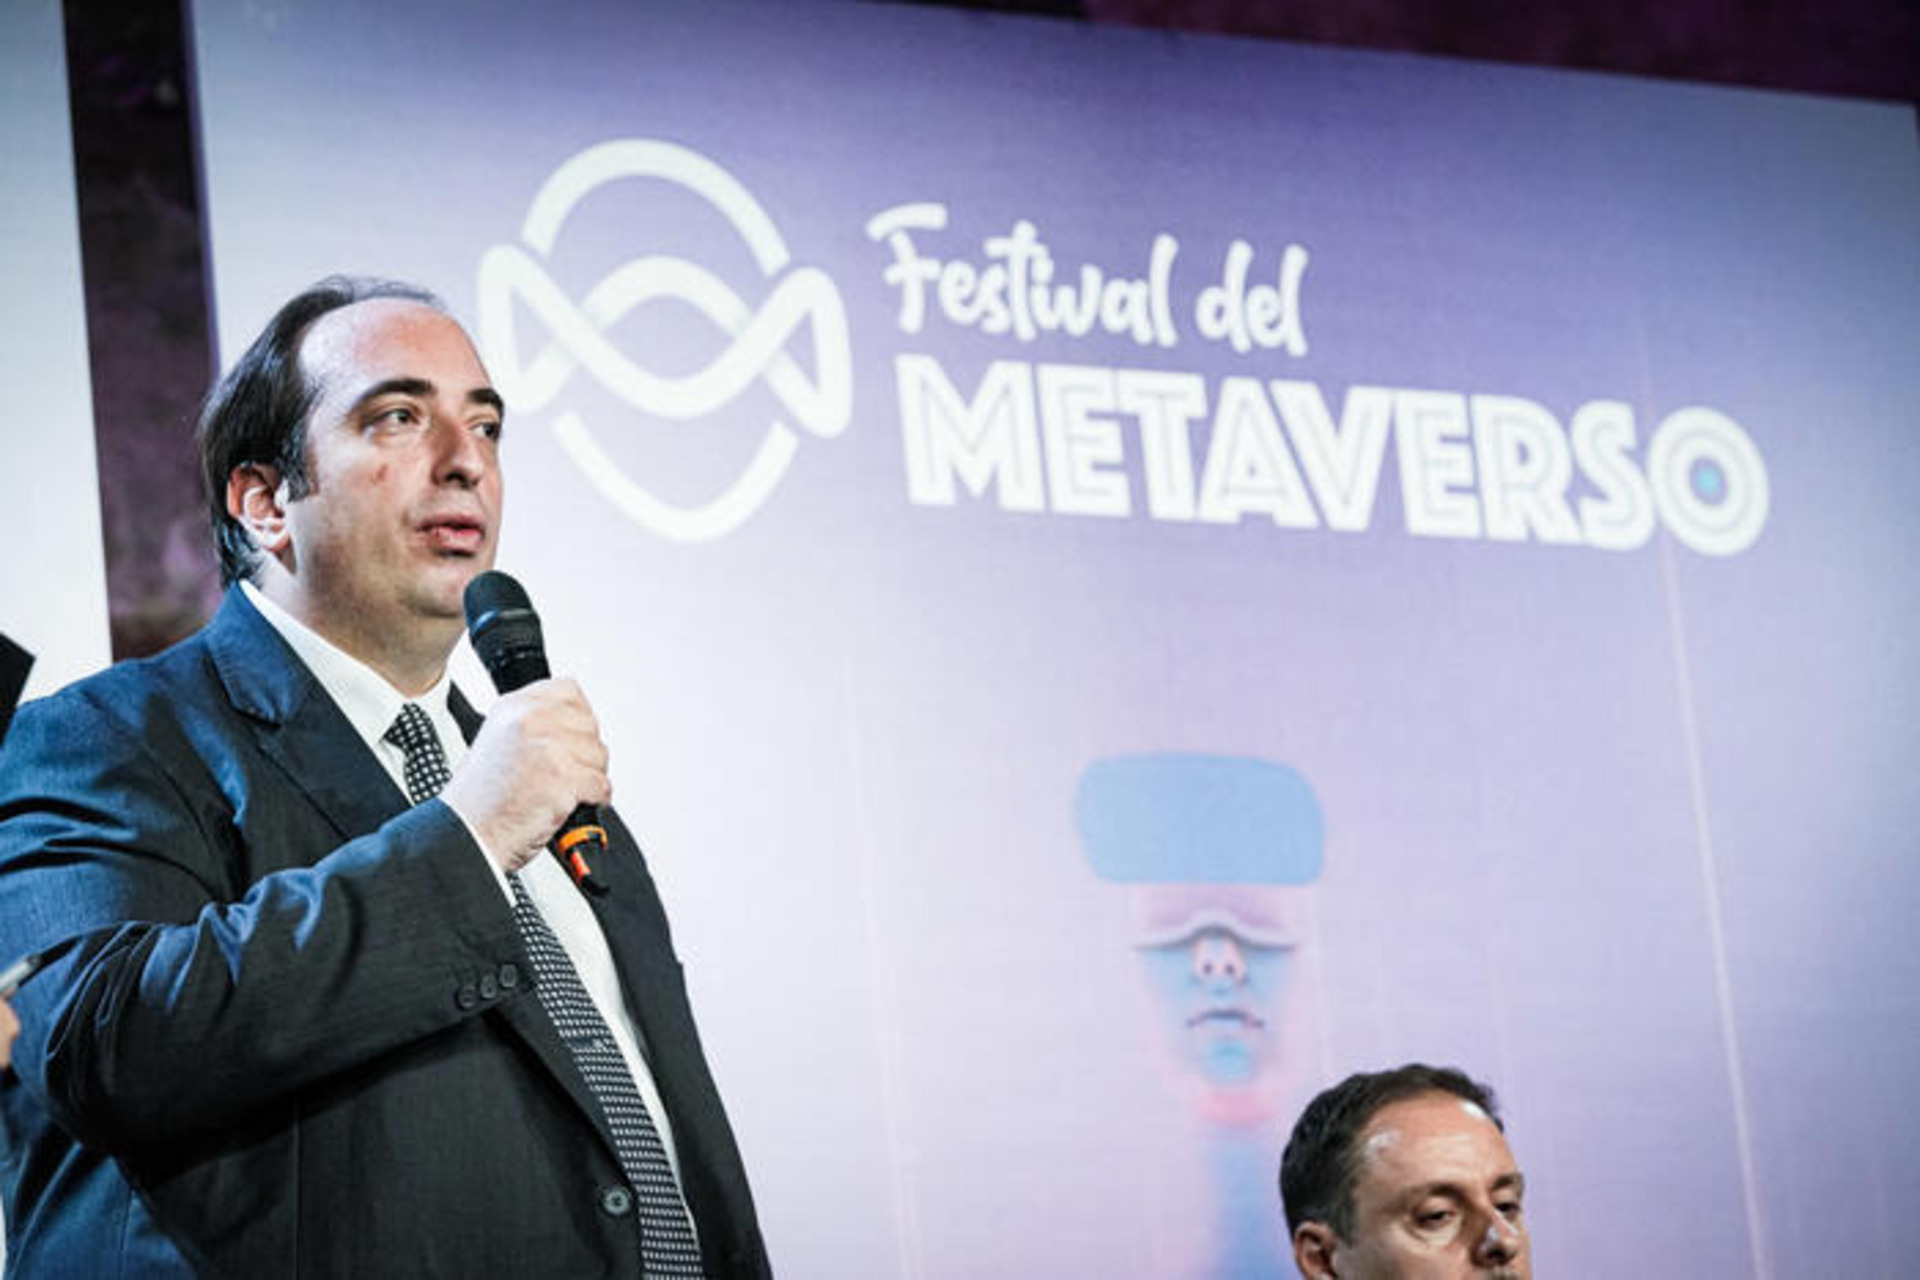 Залуу шинийг санаачлагчдын үндэсний холбооны ерөнхийлөгч Габриэле Ферриери Метаверс фестивалийн үеэр